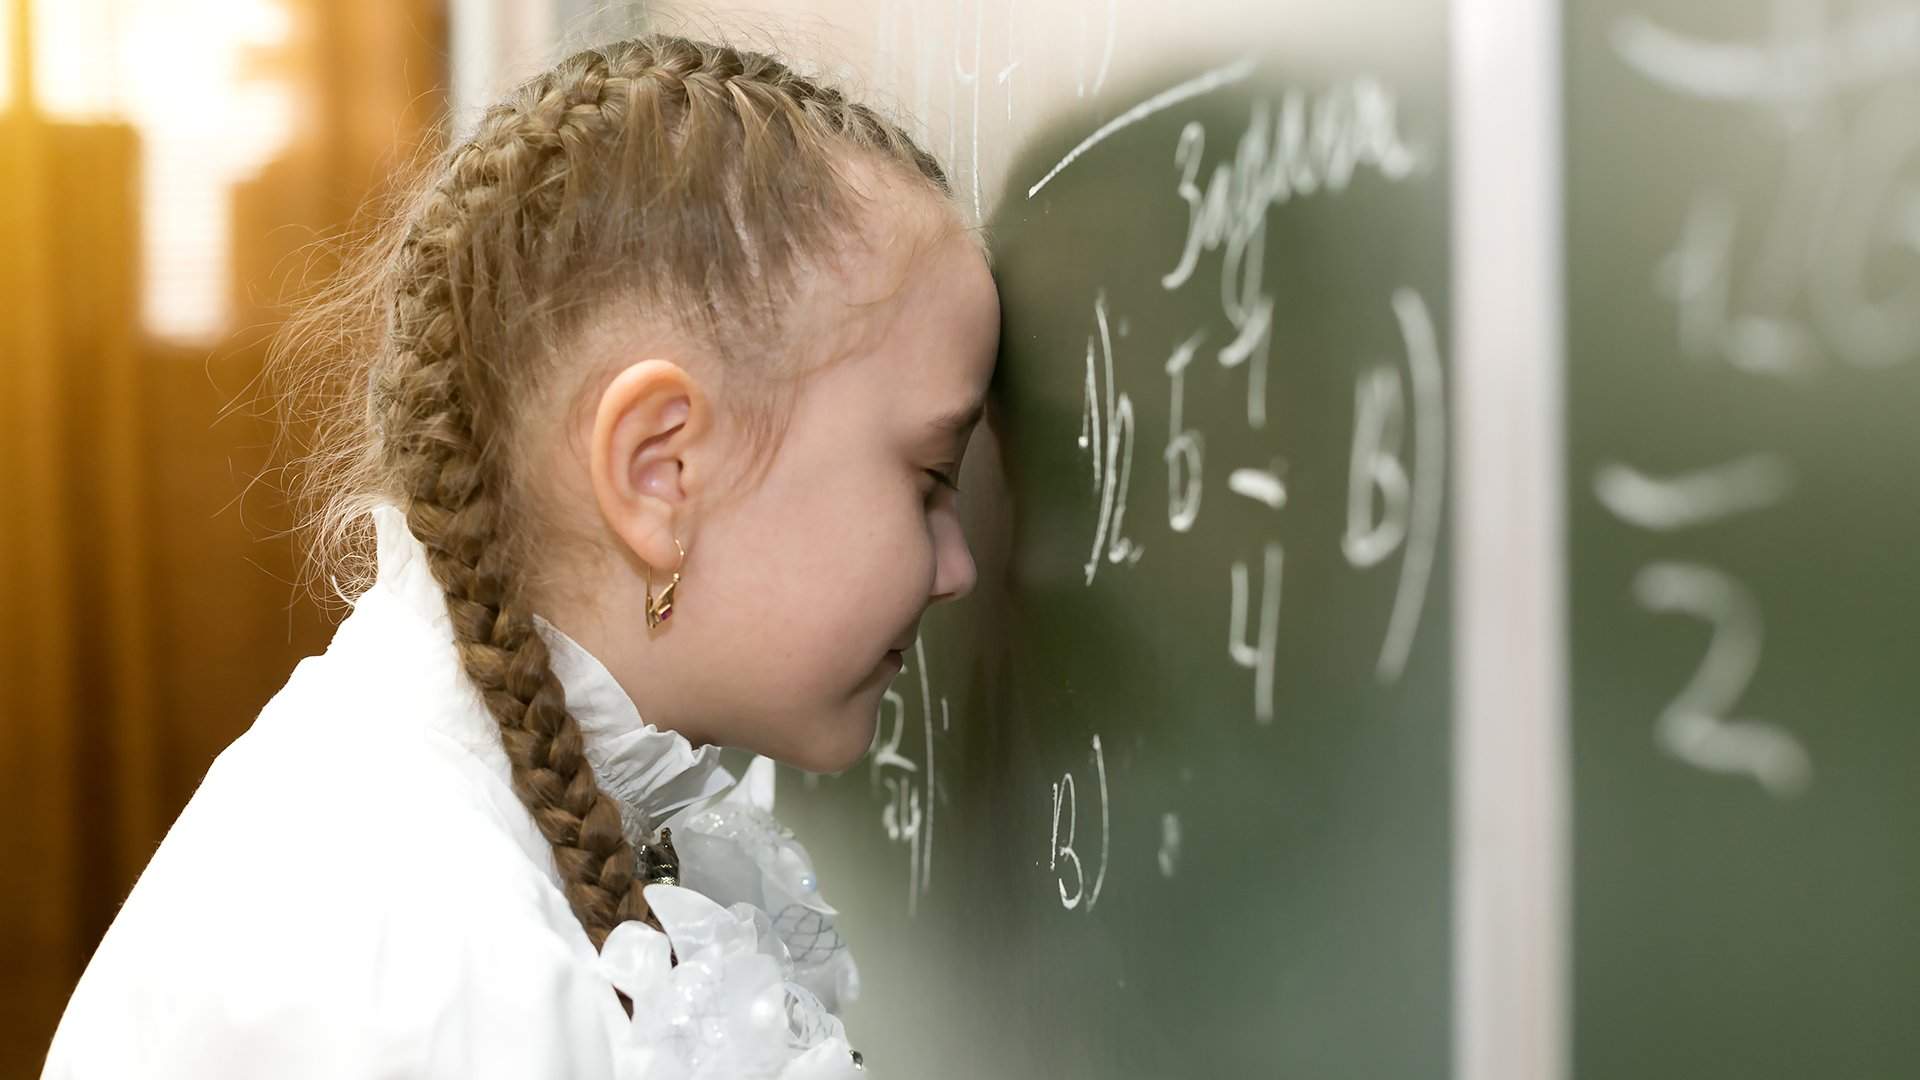 Вопрос эксперту: «Ребенок плохо учится в школе. Что делать?»